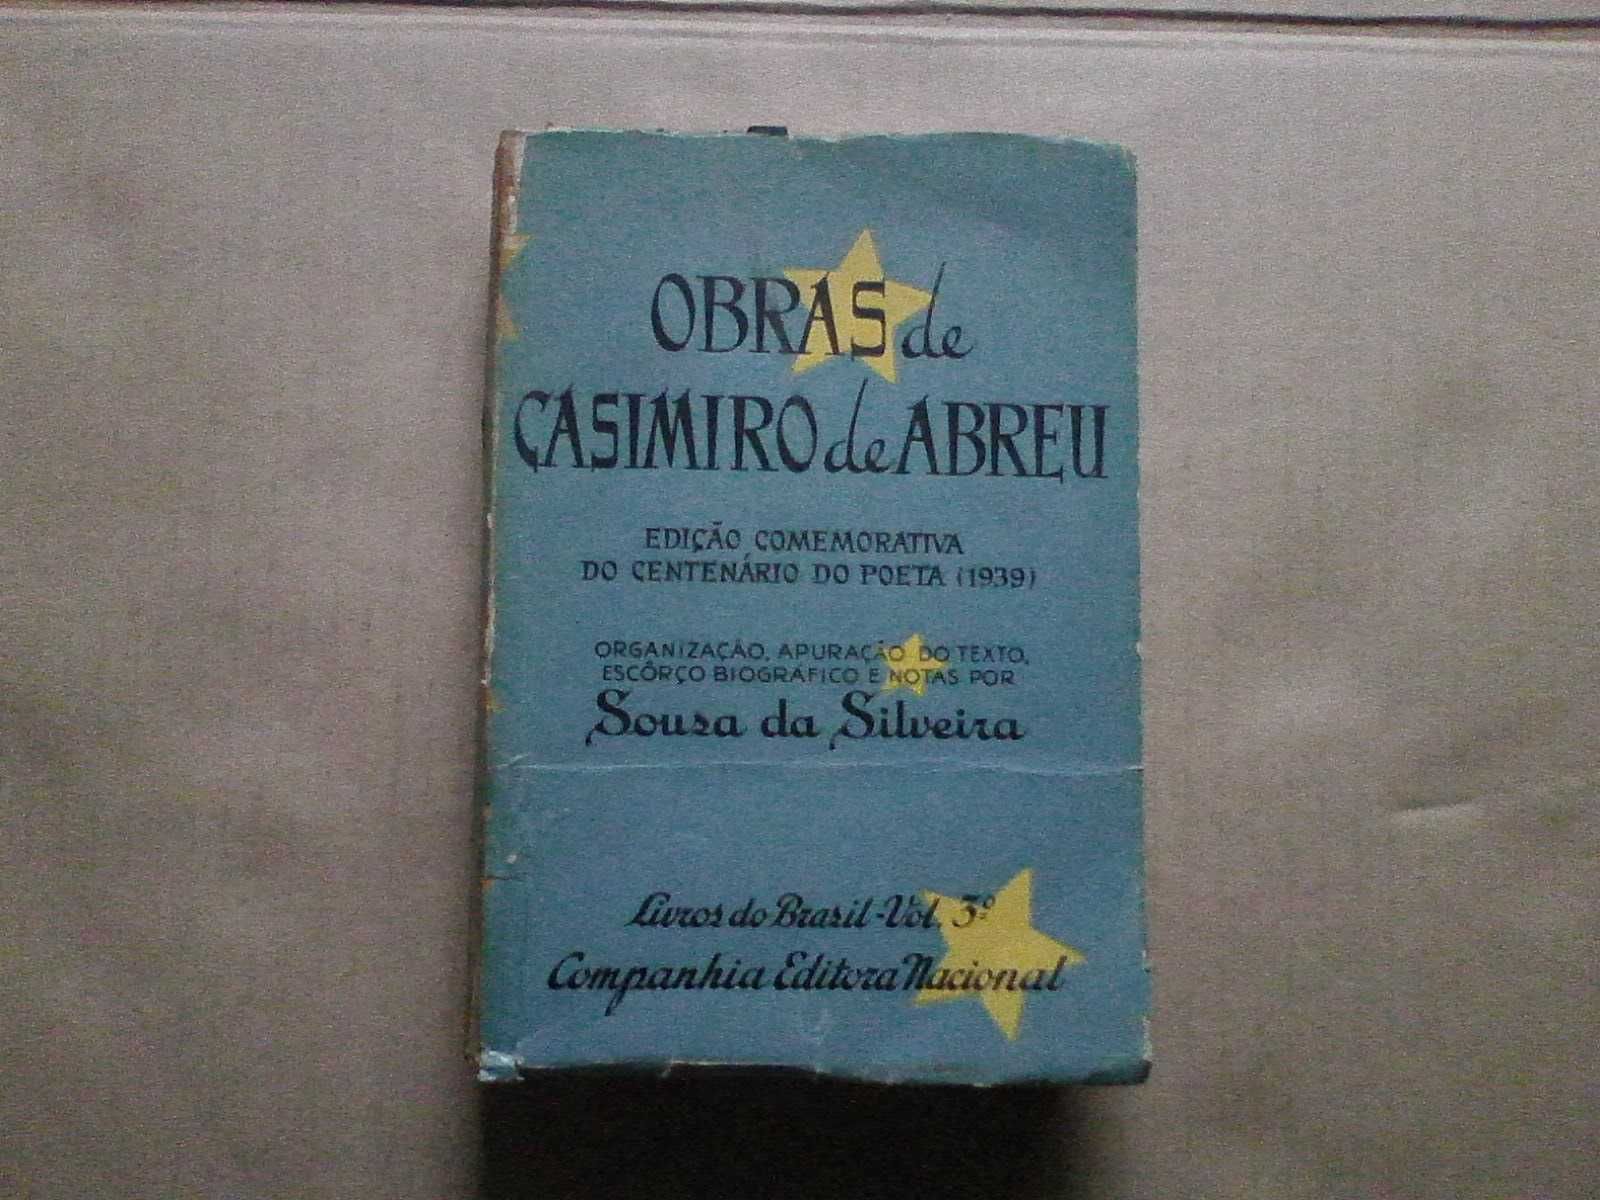 Casimiro de Abreu - Edição comemorativa do Centenário do poeta nº23